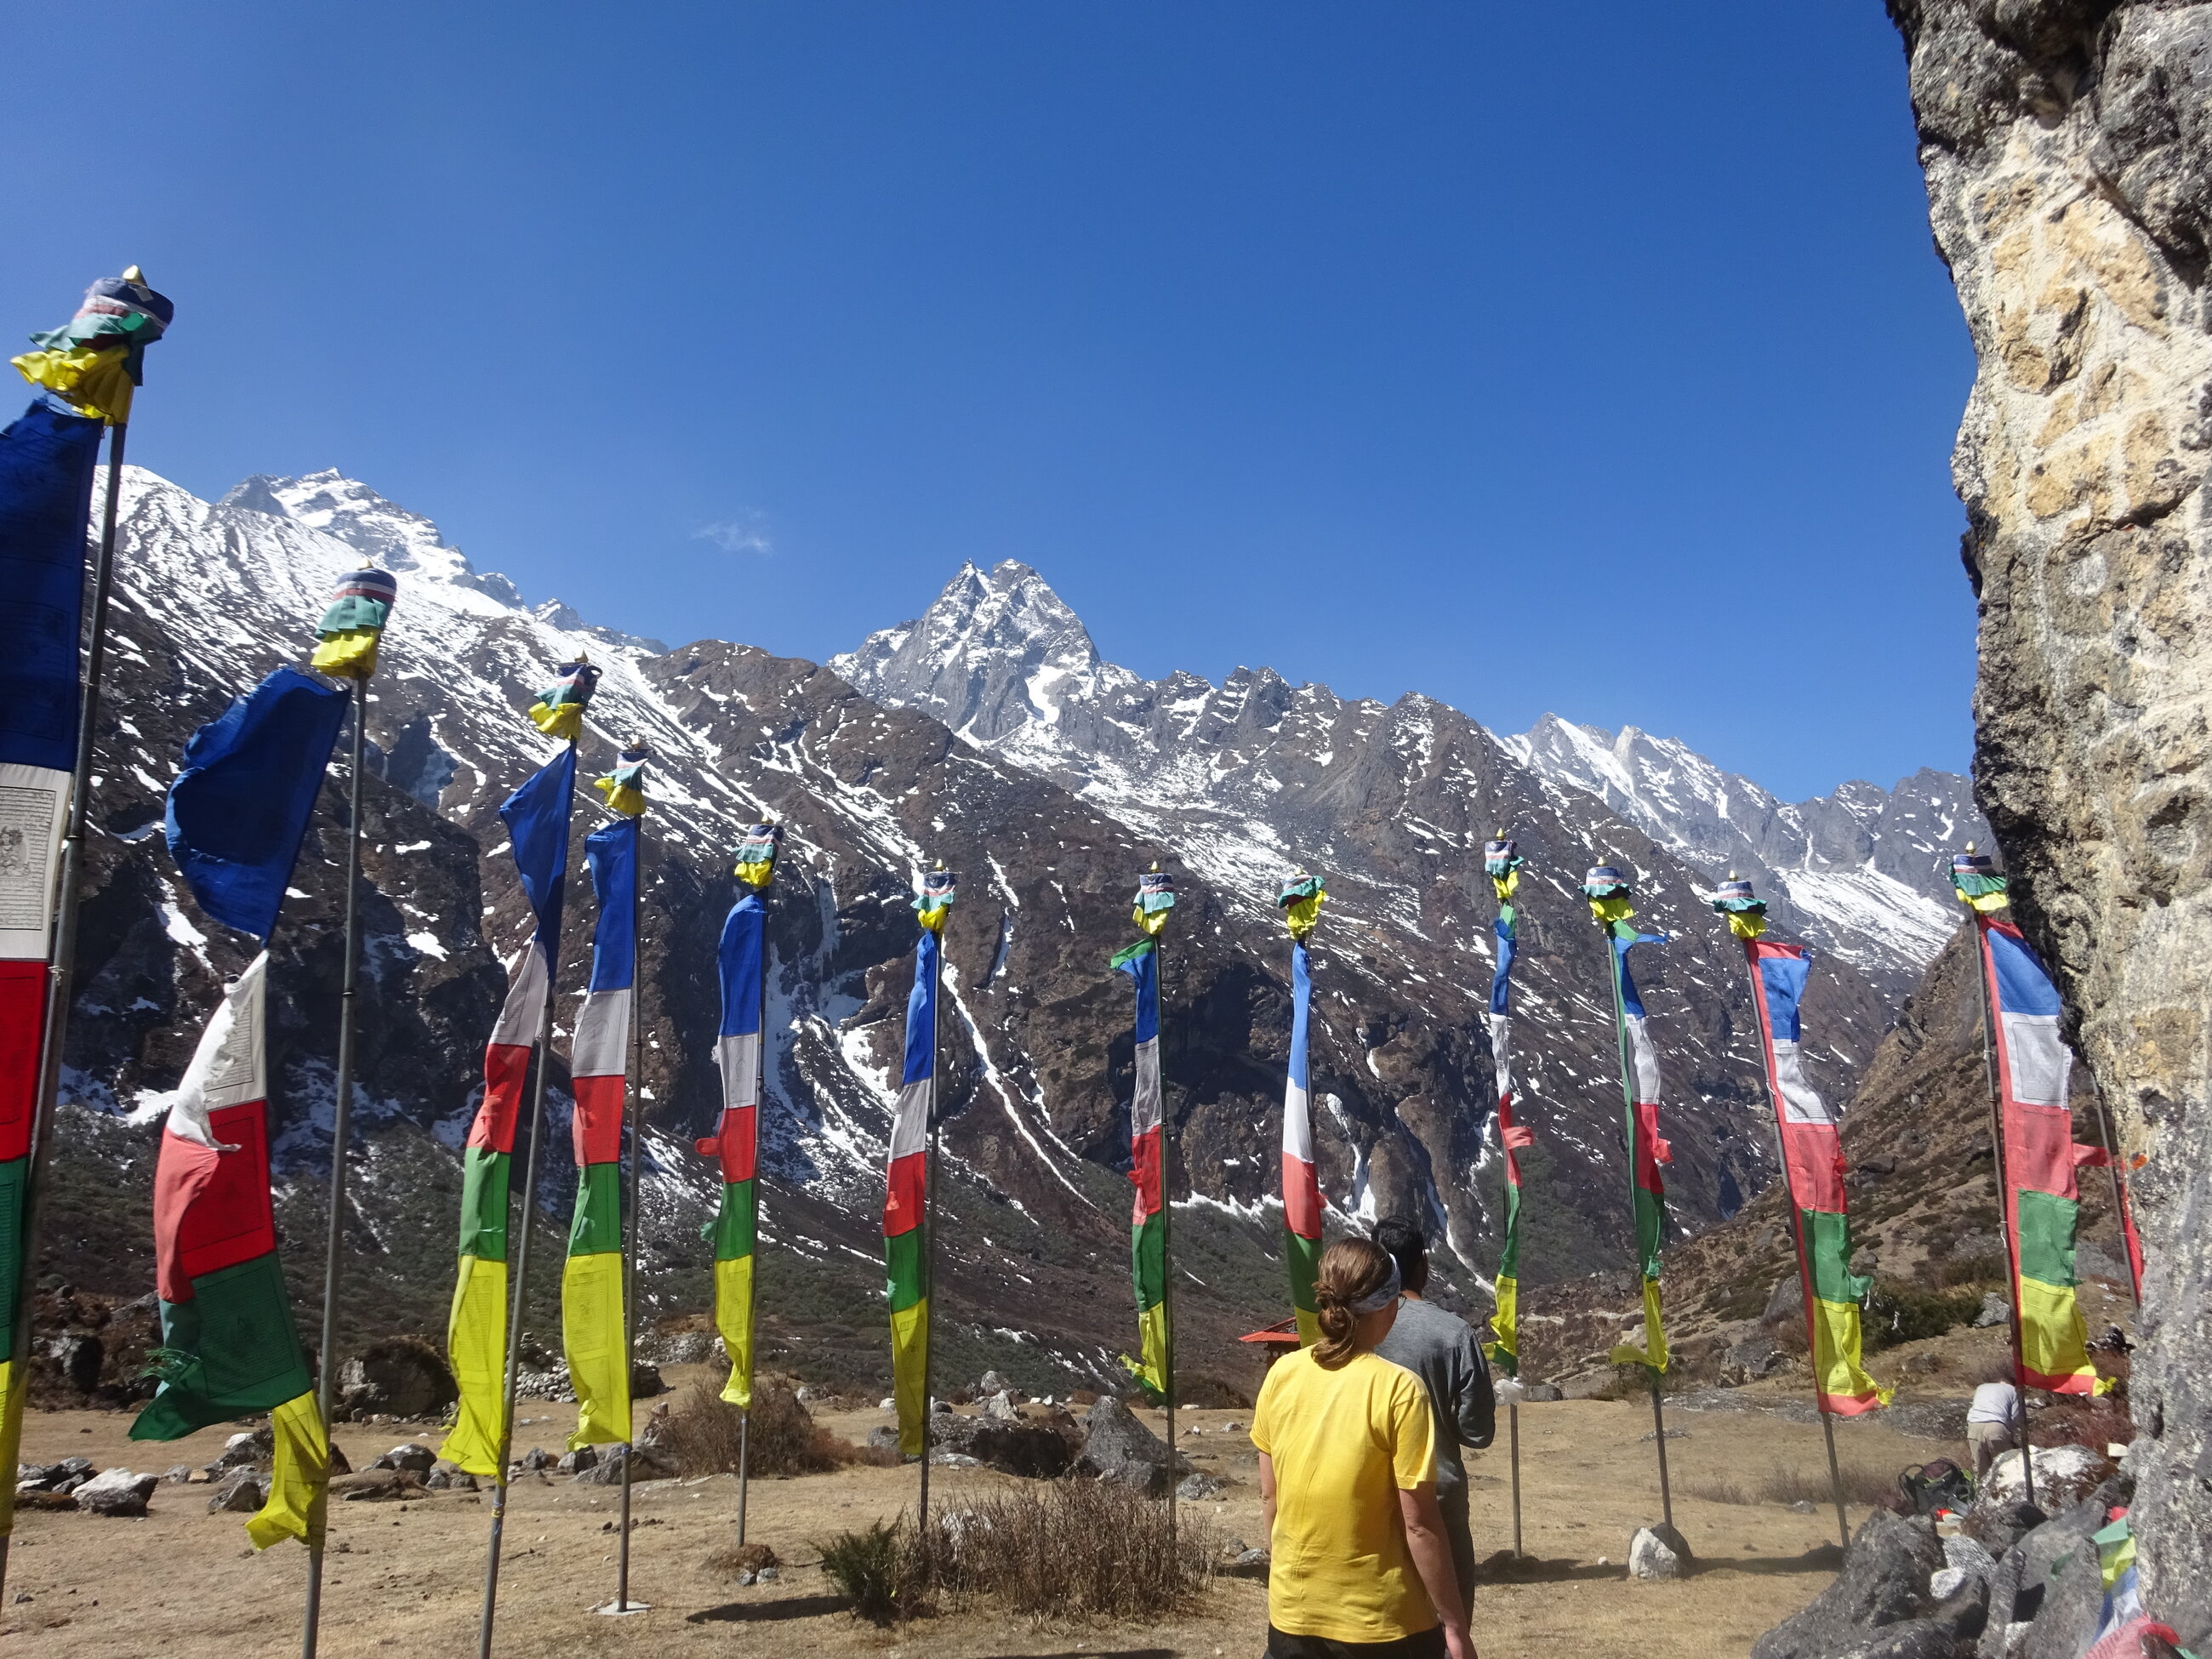 Spiritual ceremony amongst the Himalayas 